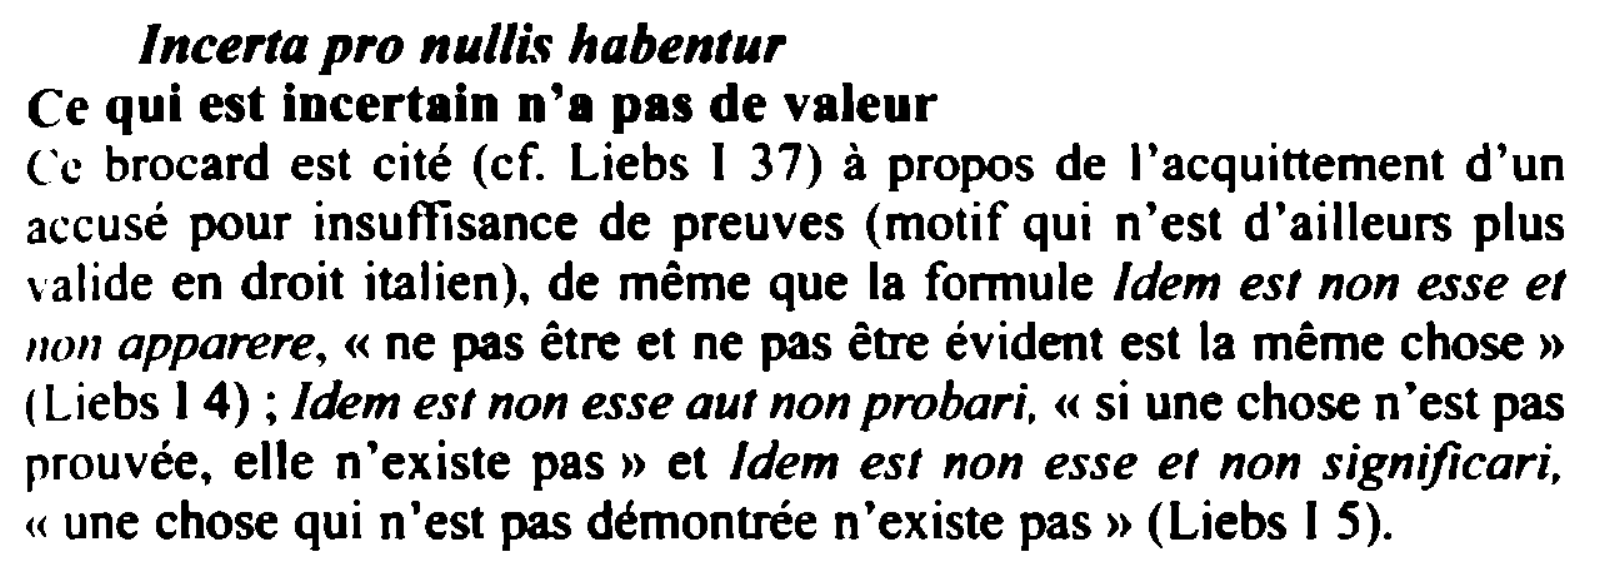 Prévisualisation du document Incerta pro nul/if habentur

Ce qui est incertain n'a pas de valeur
(.~c brocard est cité (cf. Liebs 1 37)...